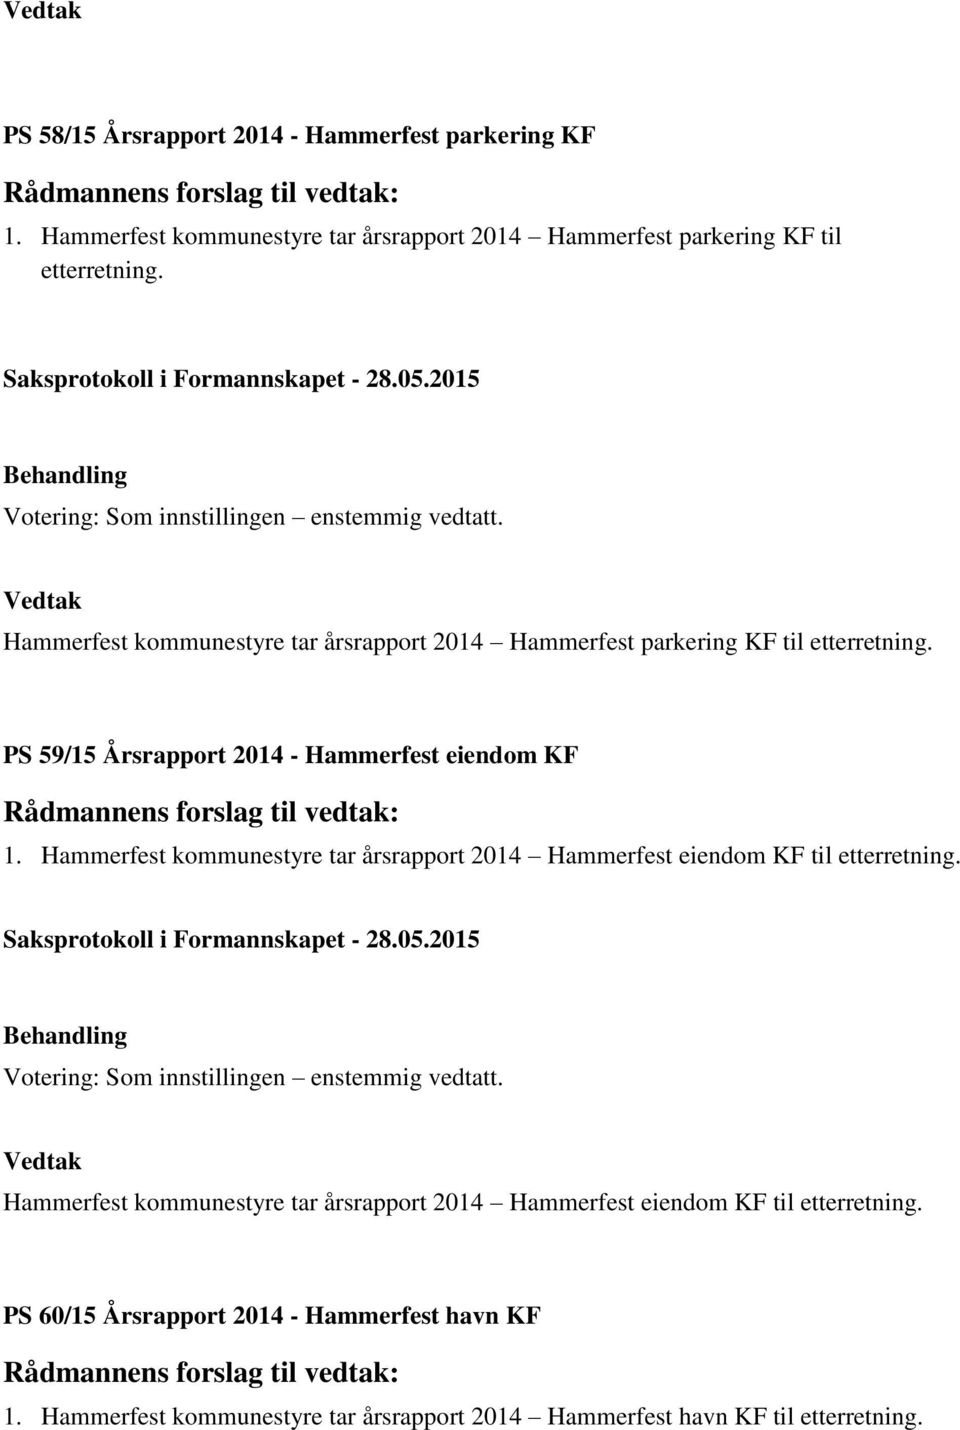 Hammerfest kommunestyre tar årsrapport 2014 Hammerfest eiendom KF til etterretning.